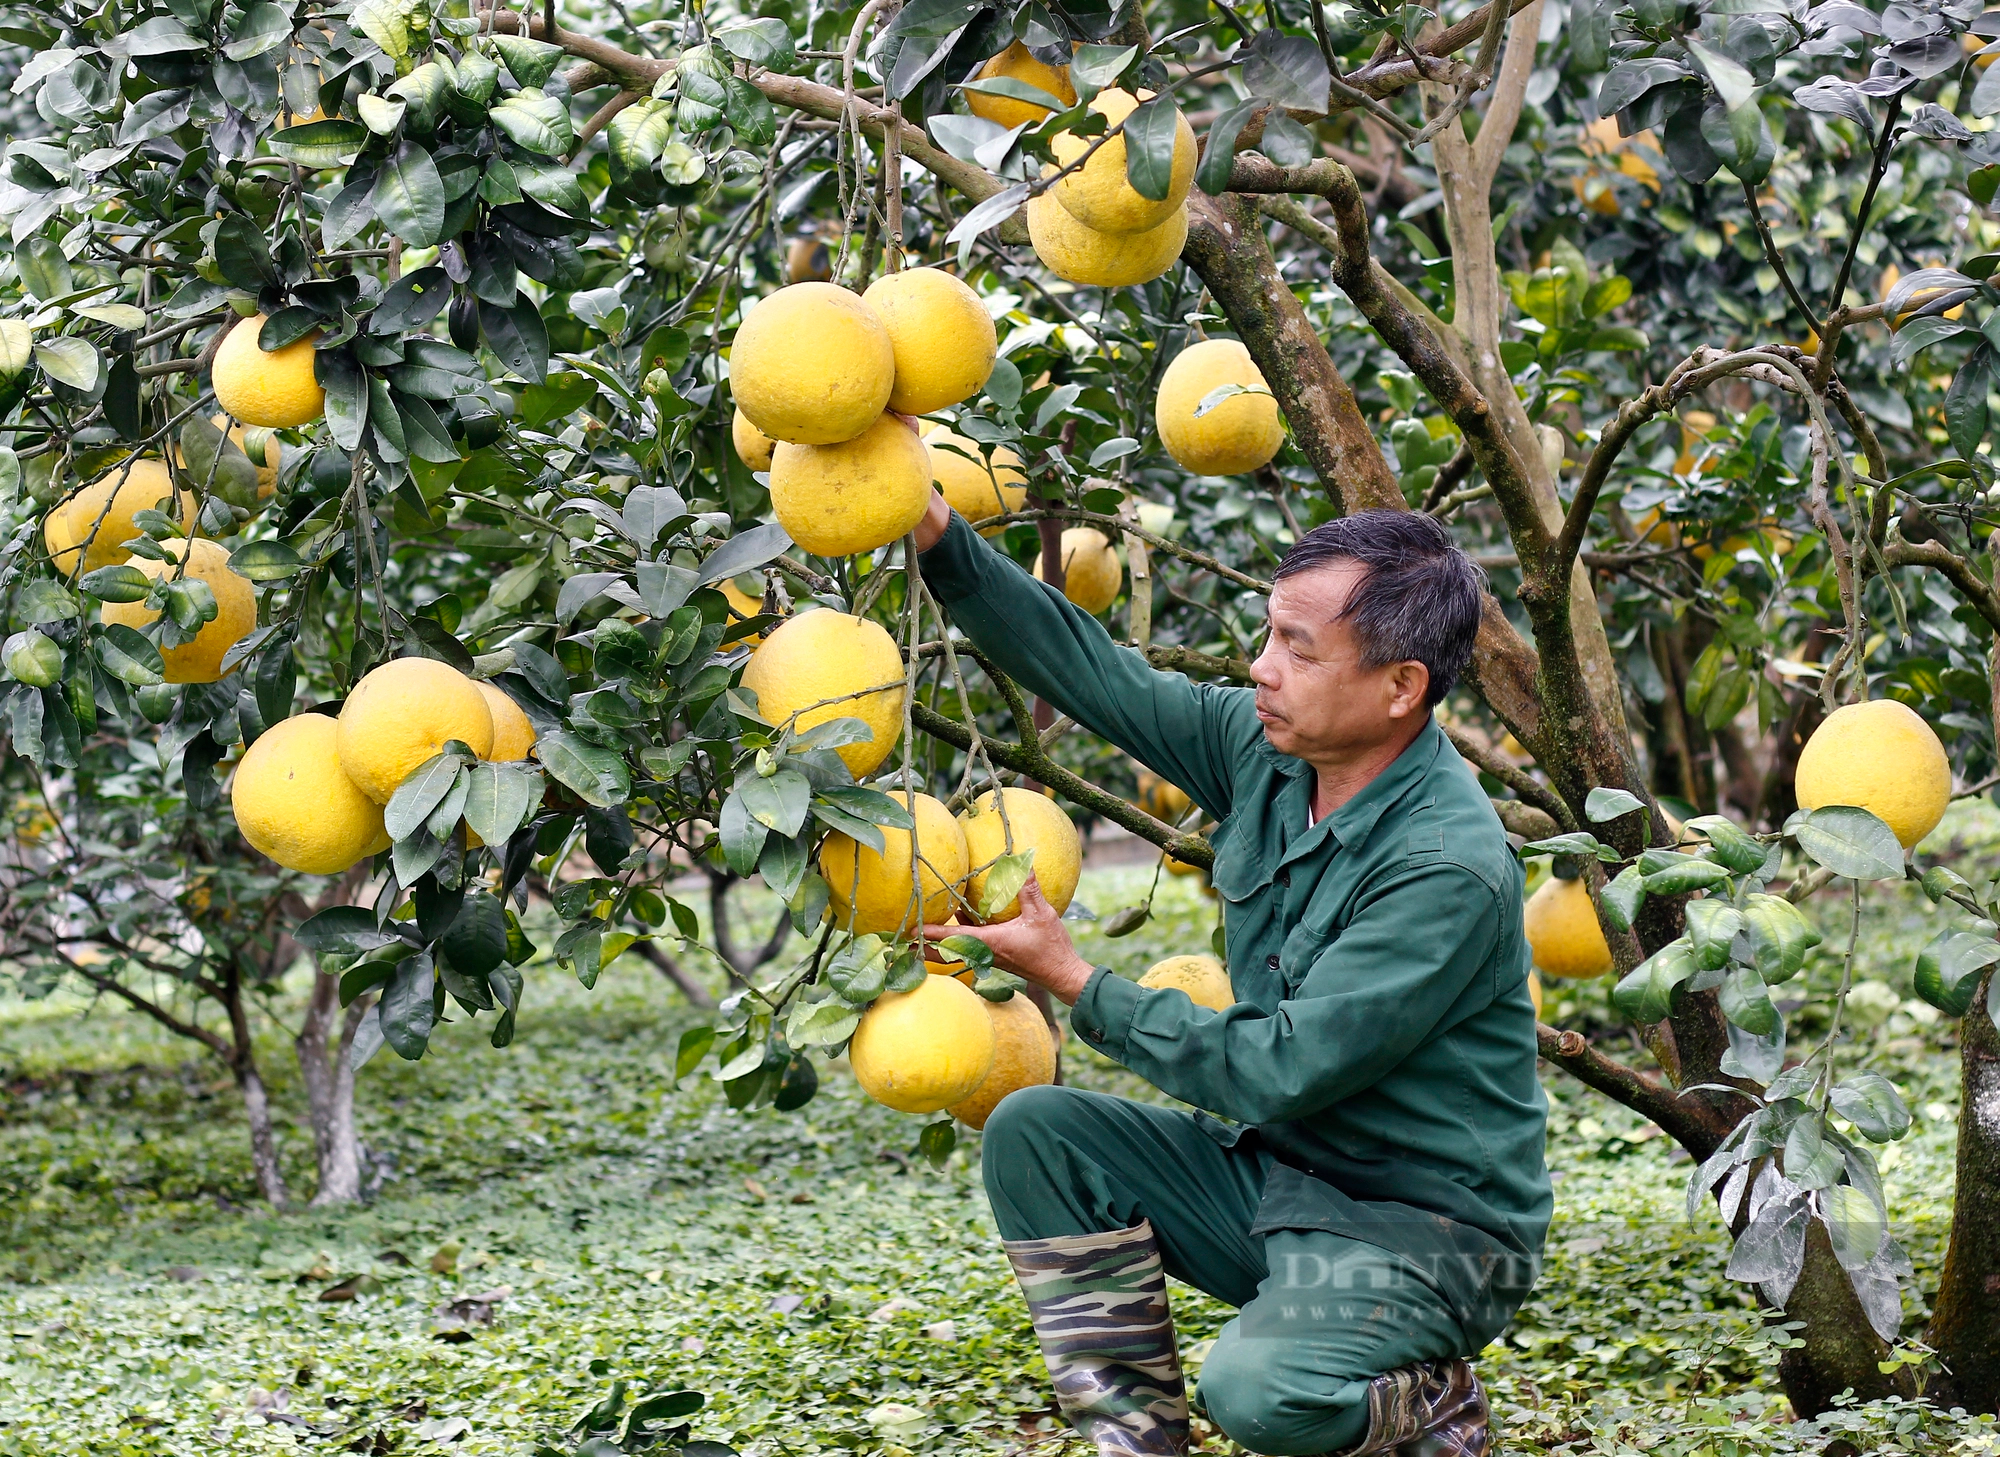 Bưởi Phú Thọ được mùa, sản lượng đạt hơn 52.000 tấn, doanh thu gần 800 tỉ đồng - Ảnh 1.